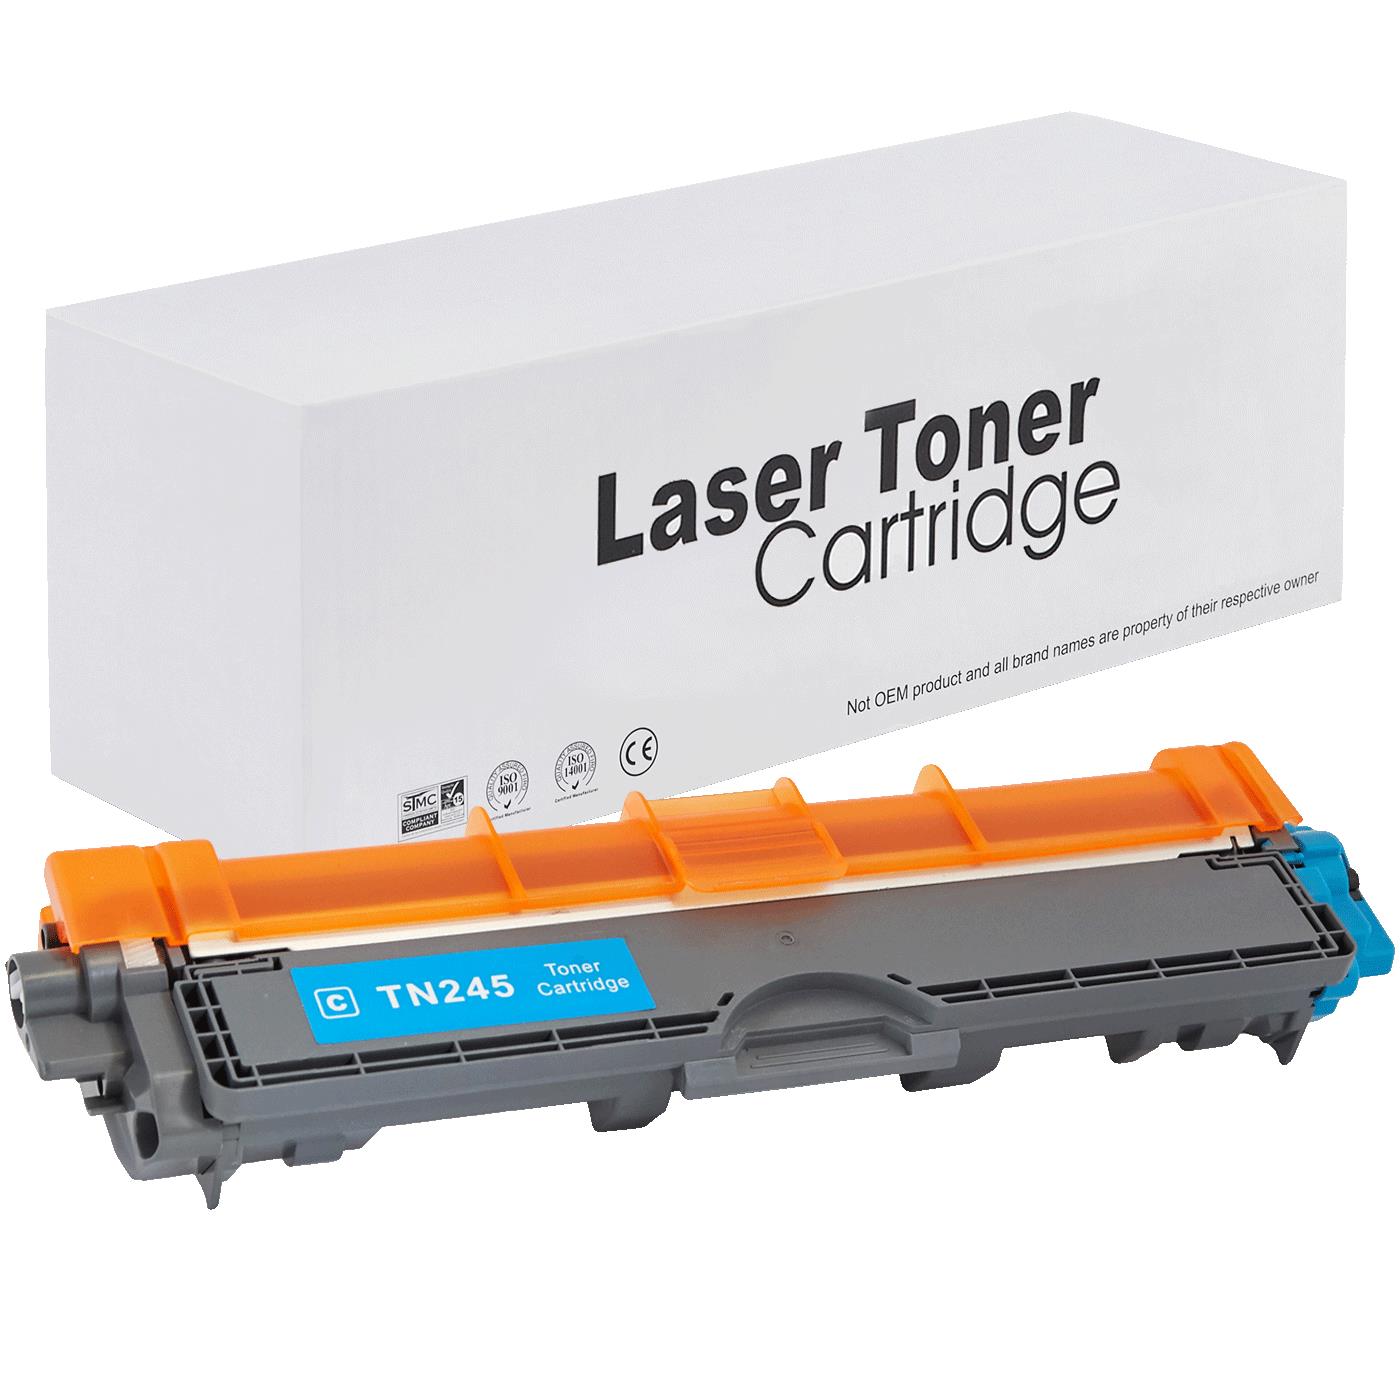 съвместима тонер касета за принтери и печатащи устройства на Brother 9332CDW Toner BR-245C | TN245C / TN241C. Ниски цени, прецизно изпълнение, високо качество.